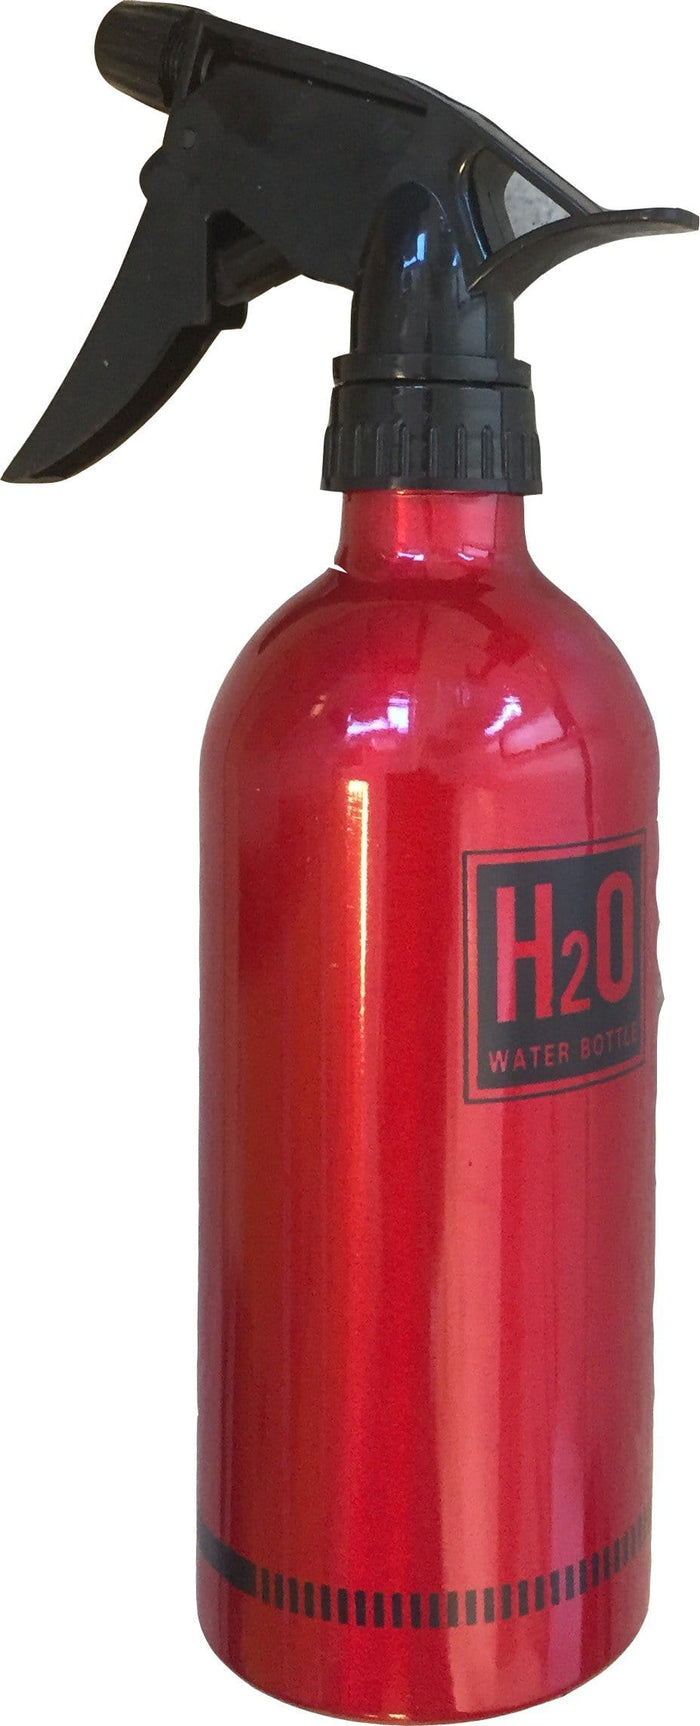 H20 Water Spray Bottle